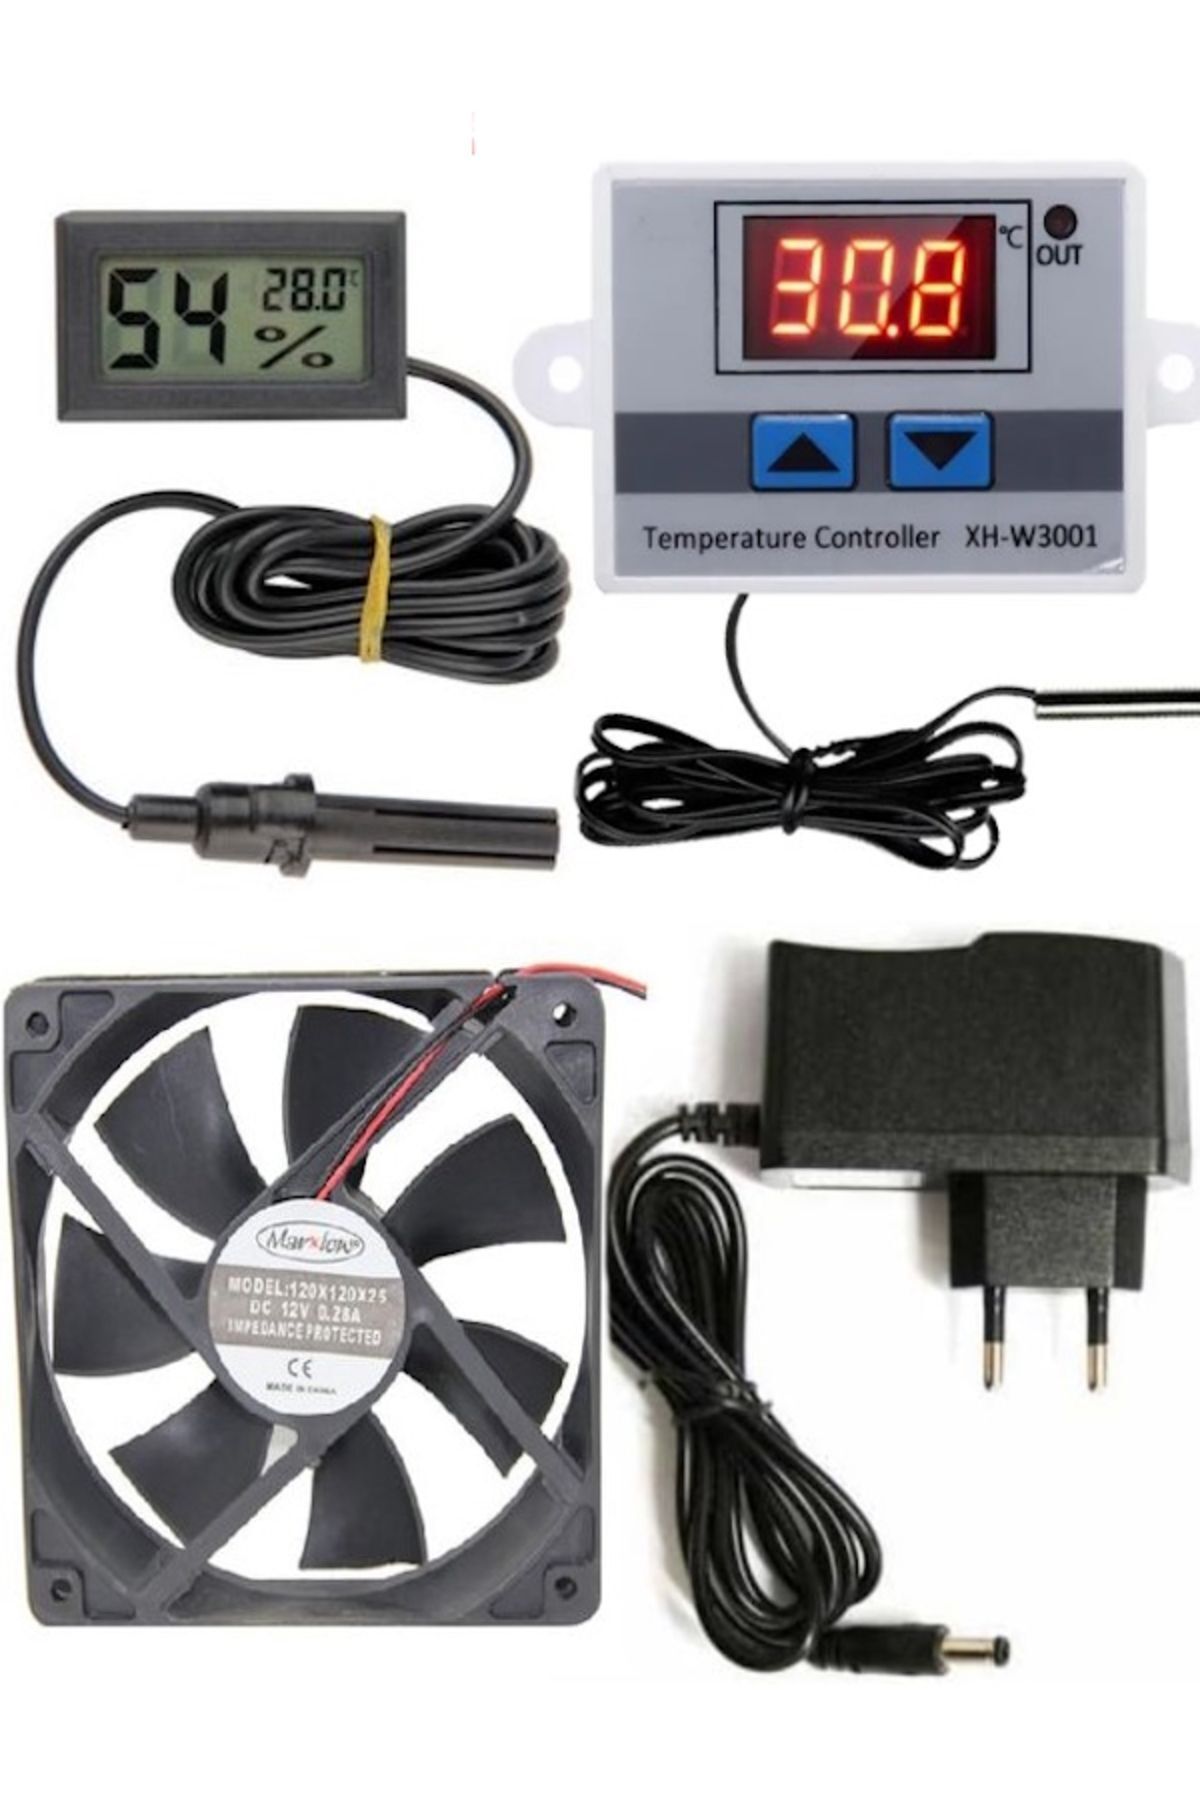 diasithalat Kuluçka makinesi seti, Kuluçka, w3001 termostat, Kuluçka termostat, Kuluçka Fan, Kuluçka termometre